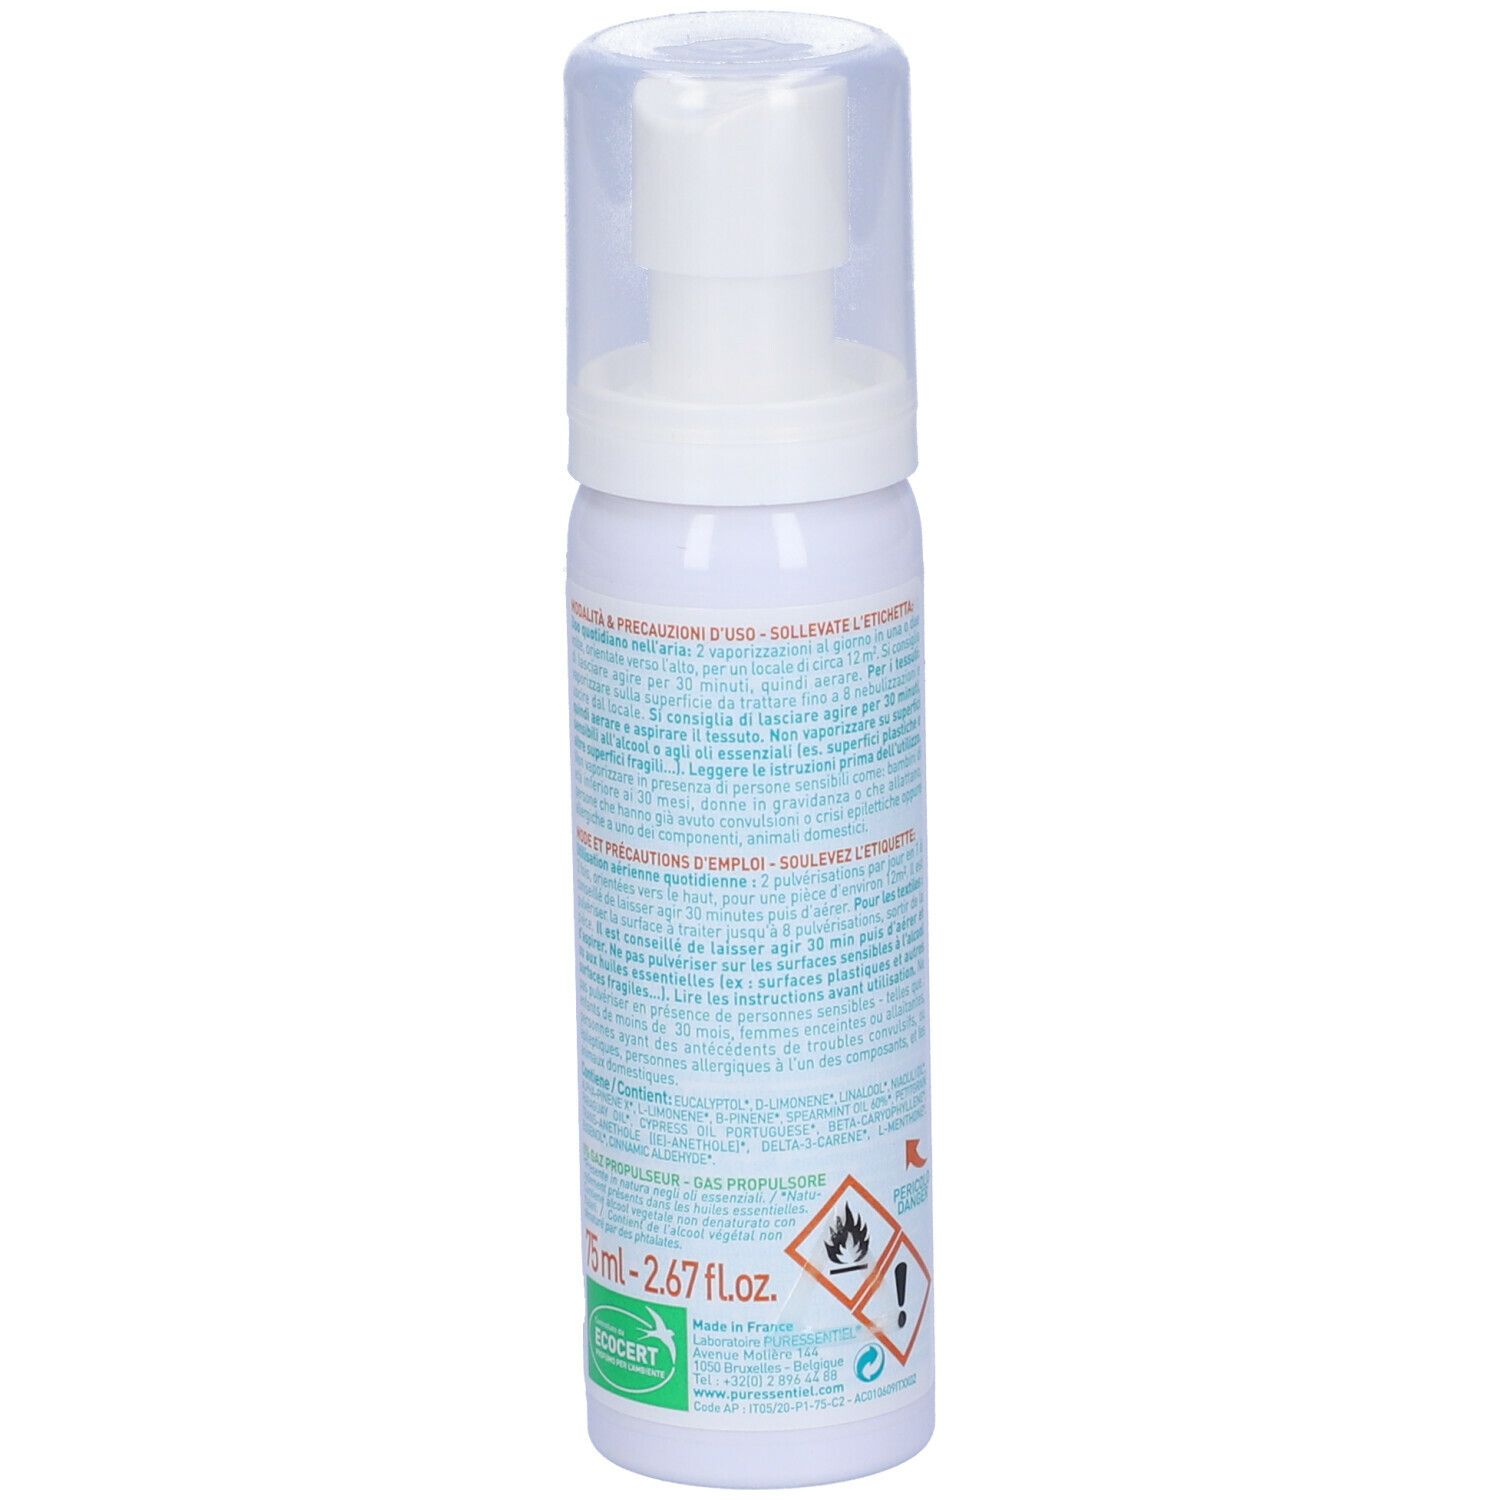 Puressentiel Purificante Spray per l'Aria con Oli Essenziali